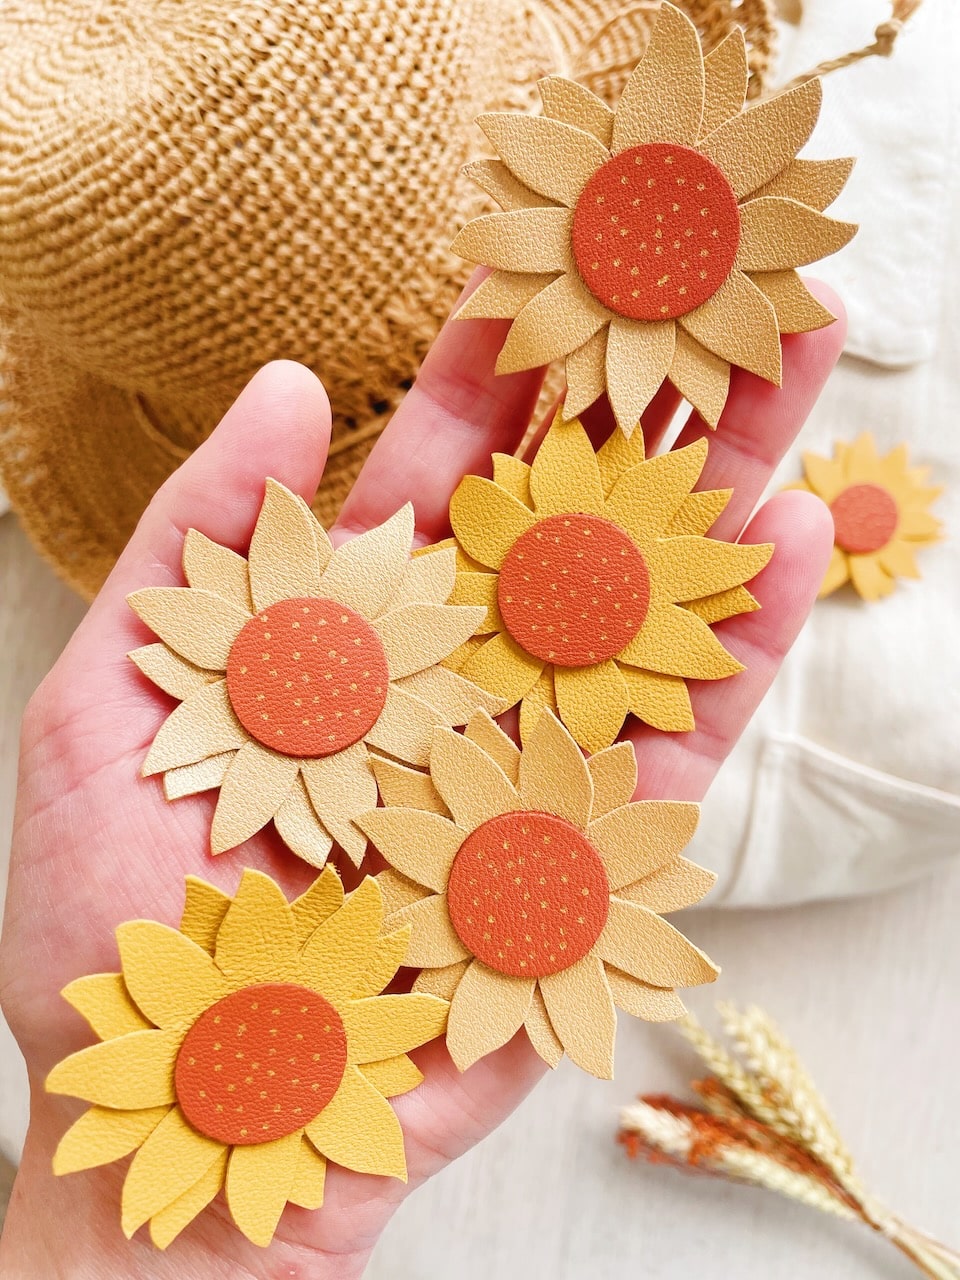 jolie broche tournesol fleur de soleil, une touche bohème chic et champêtre pour les robes et tenues d'été ©duventdansmesvalises 2